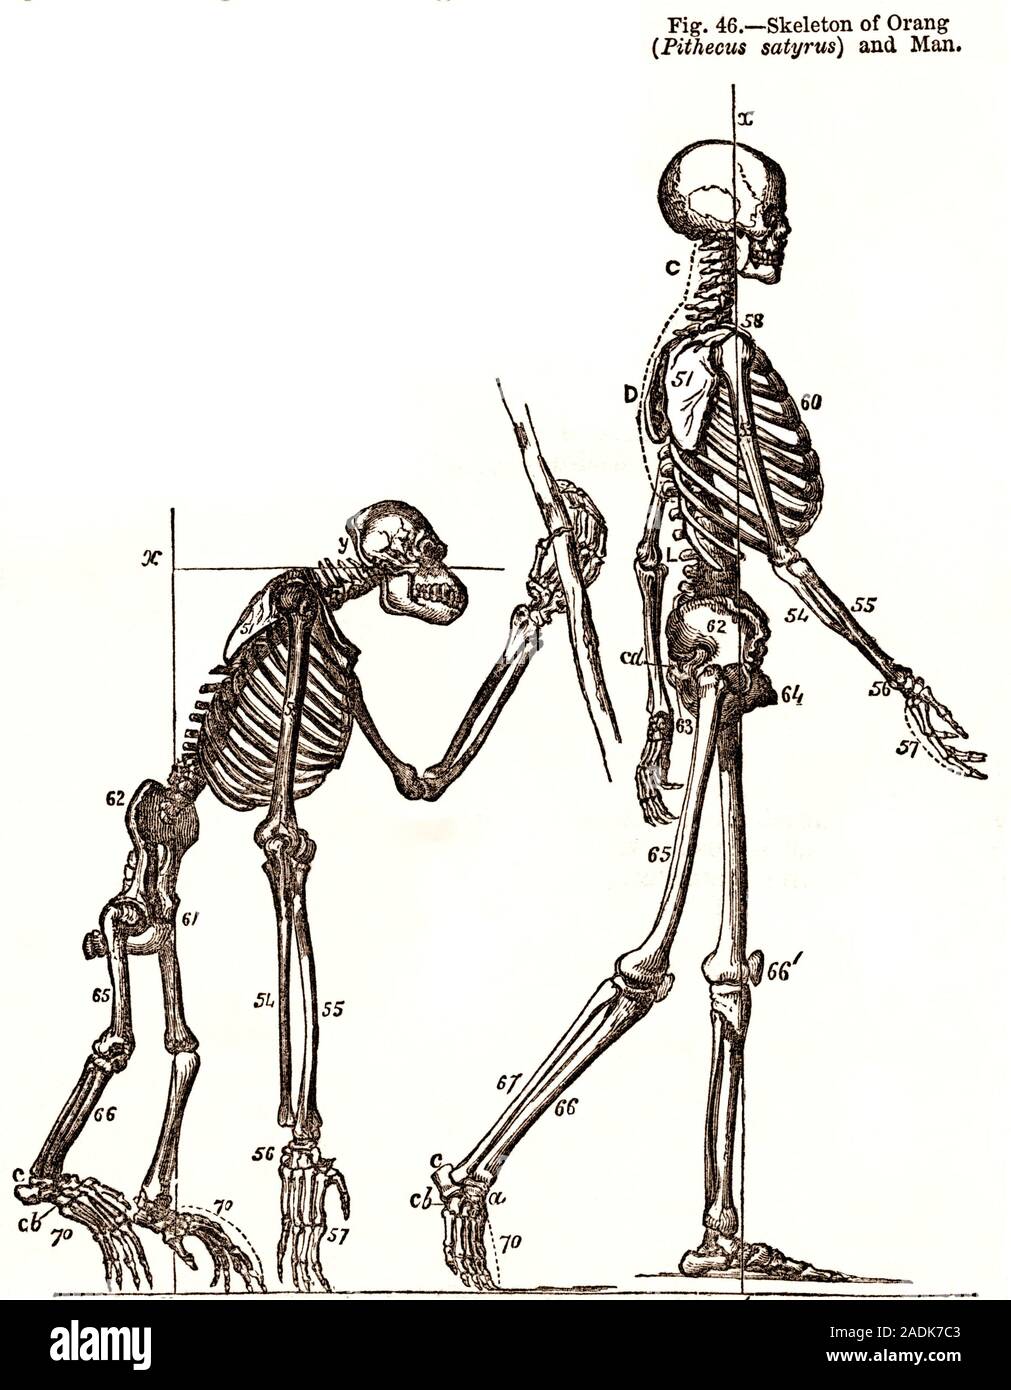 Шимпанзе передняя конечность. Строение скелета шимпанзе. Скелет шимпанзе и человека сравнение. Скелет человека и примата. Сравним скелет обезьяны и человека.